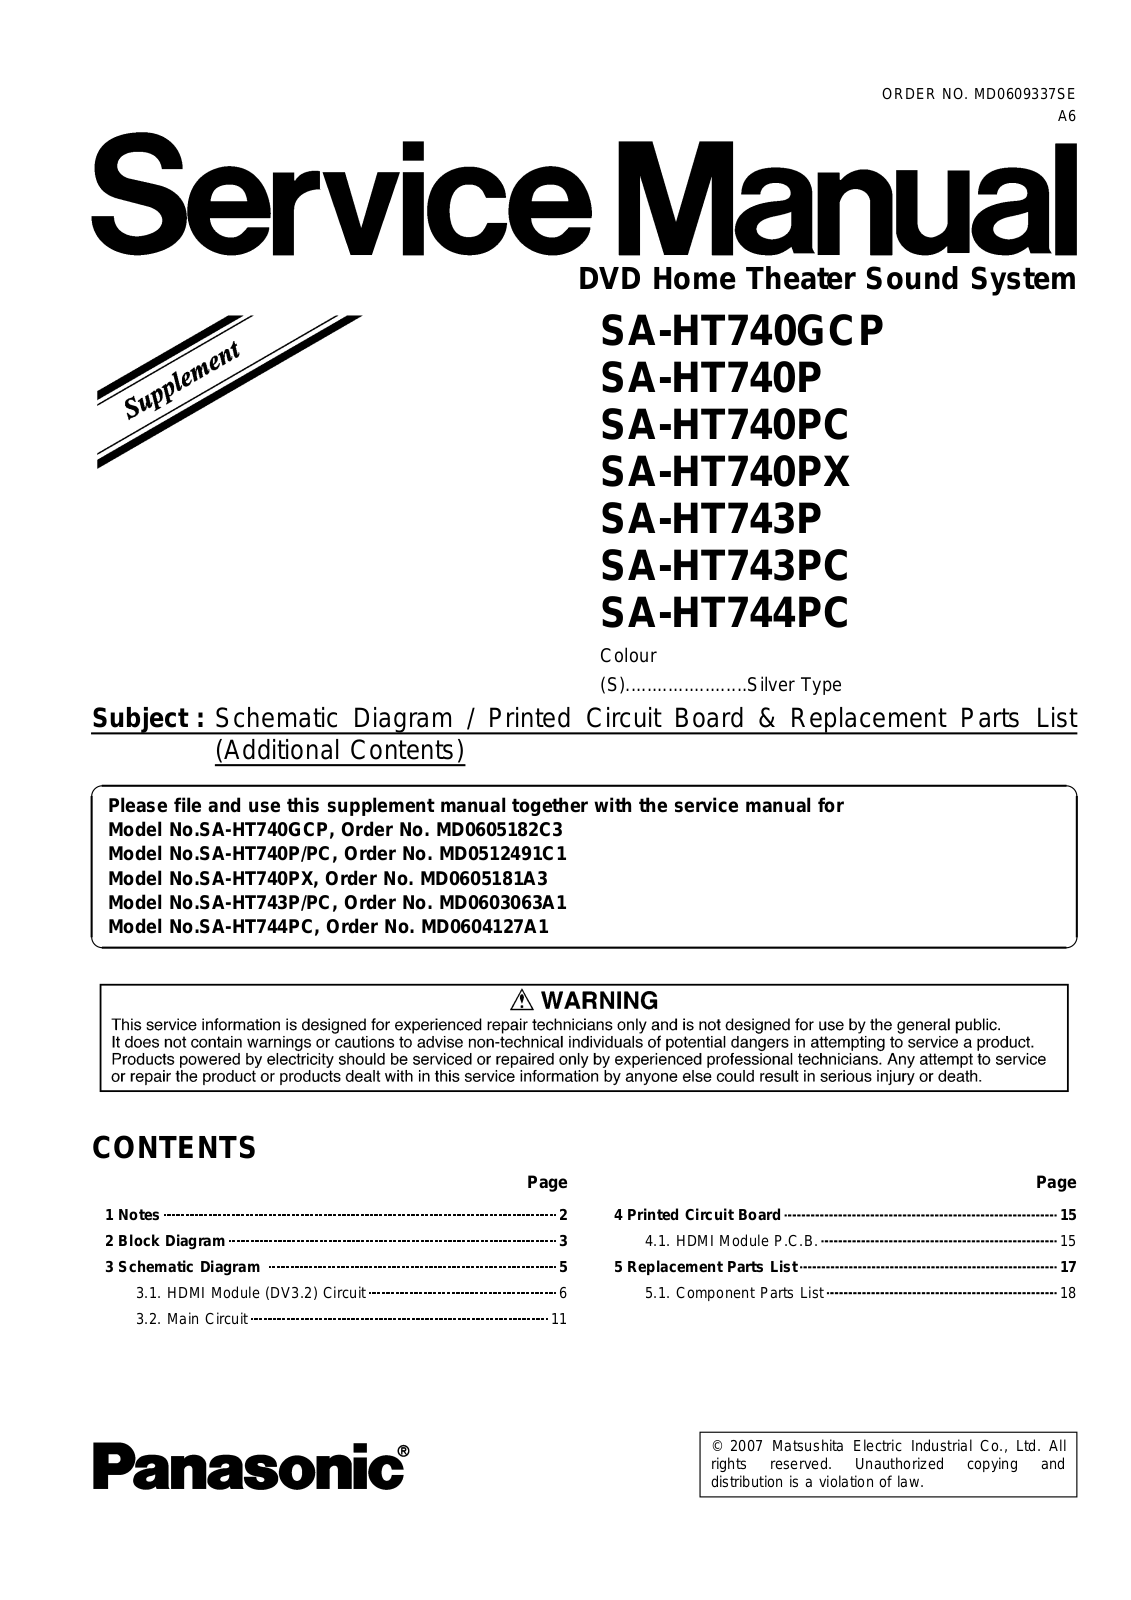 Panasonic SAHT-740-GCP, SAHT-740-P, SAHT-740-PX, SAHT-740-PC, SAHT-743-PC Service manual